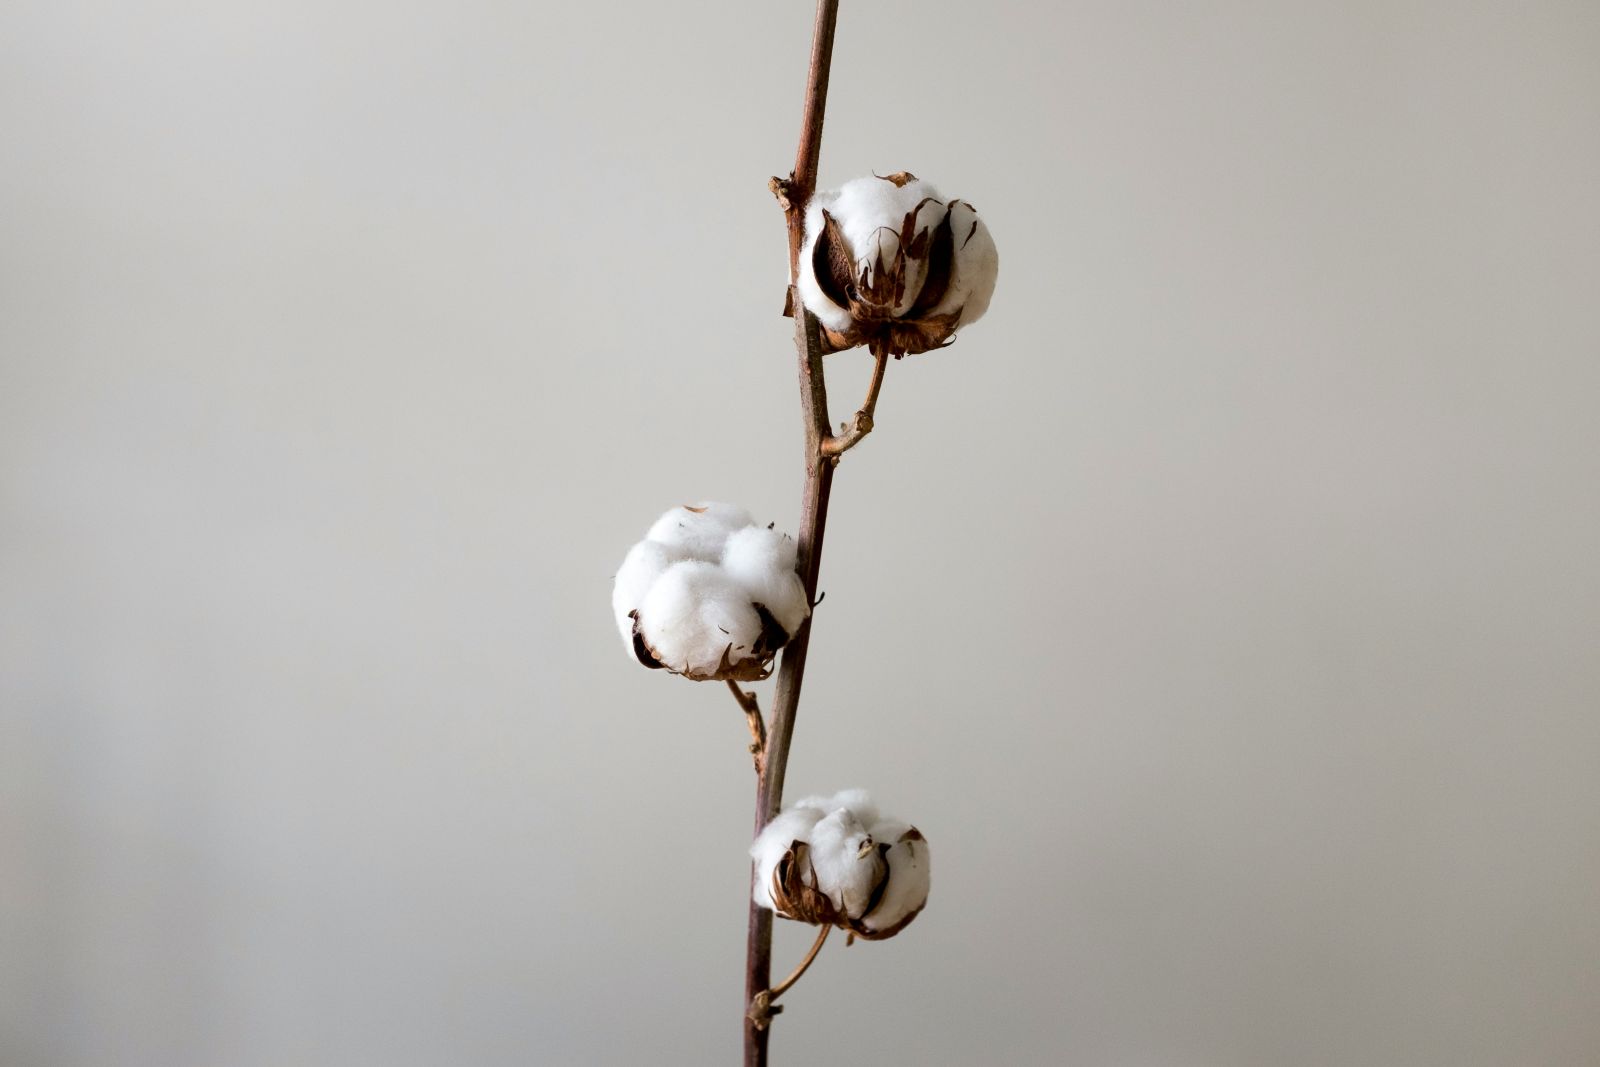 cotton on stem by Mykola Kolya Korzh via Unsplash